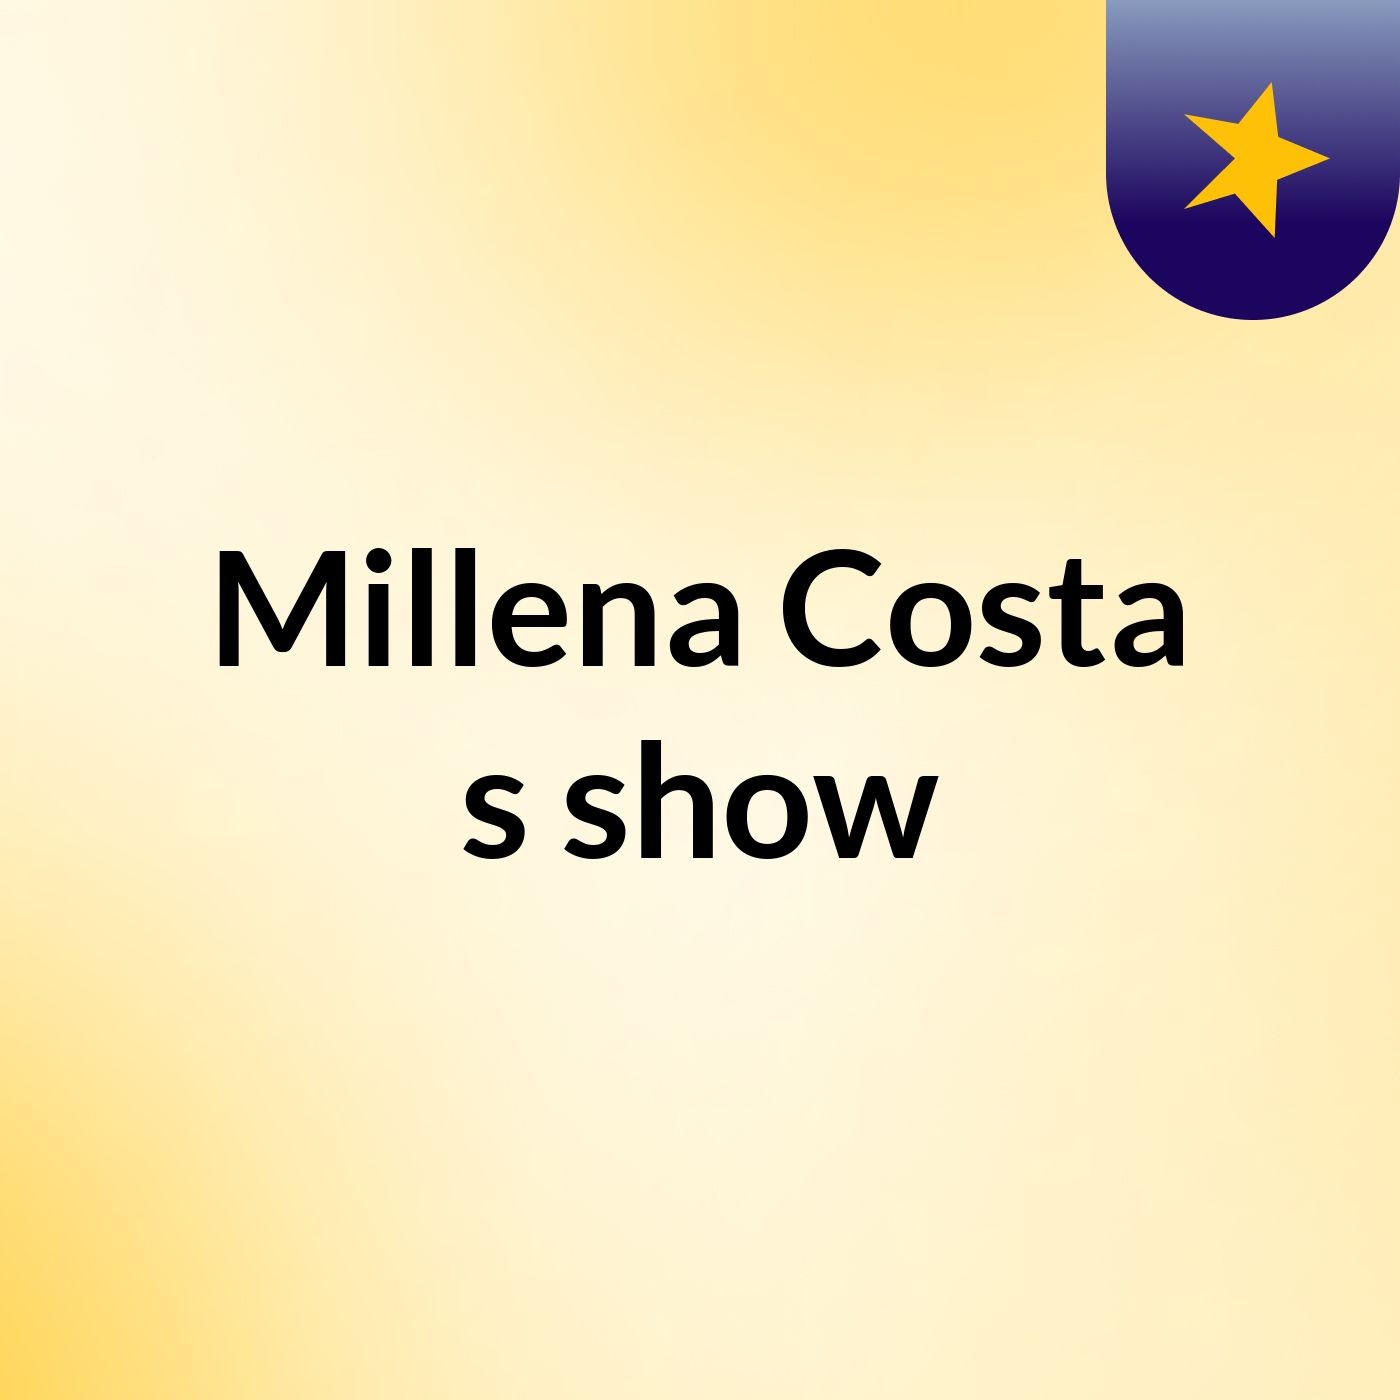 Millena Costa's show